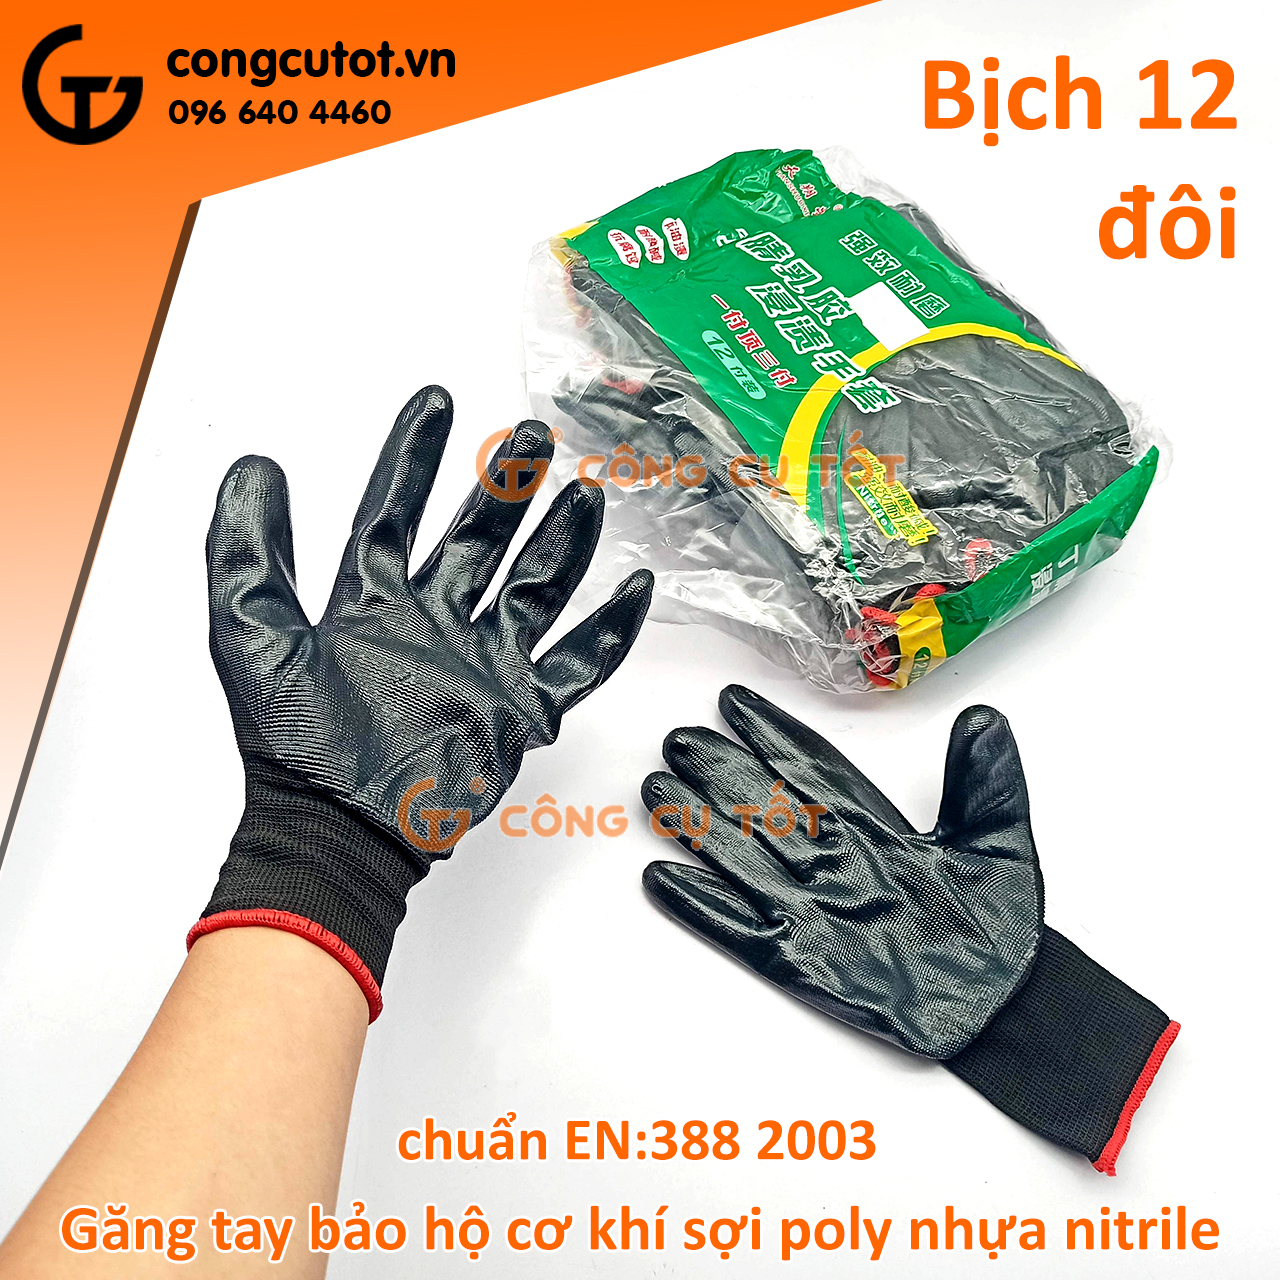 Bịch 12 đôi găng tay bảo hộ cơ khí chuẩn EN 388:2003 màu đen.